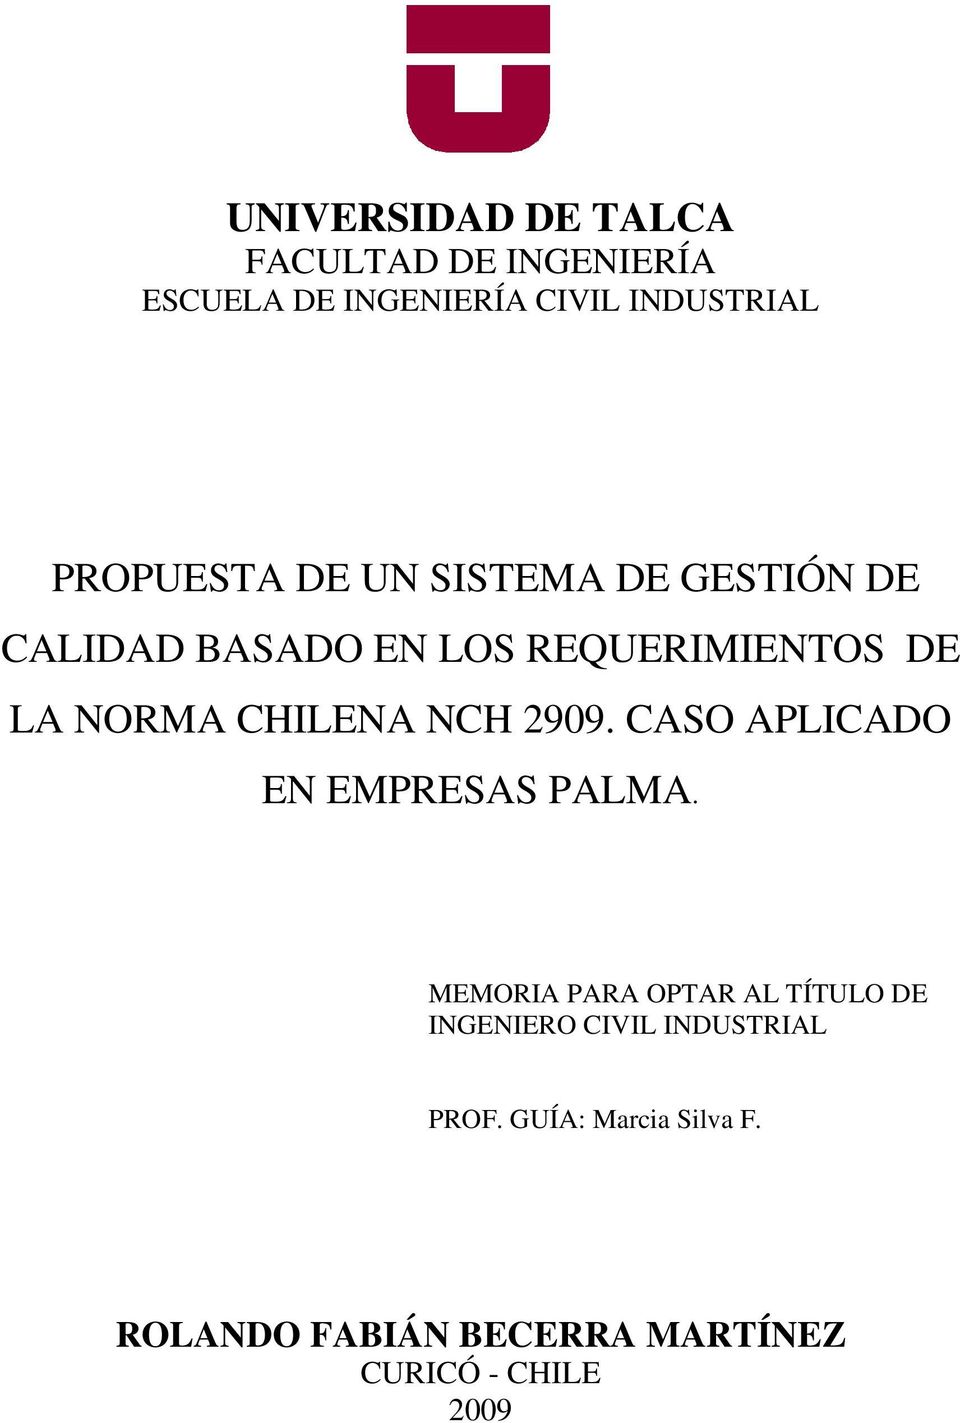 CHILENA NCH 2909. CASO APLICADO EN EMPRESAS PALMA.